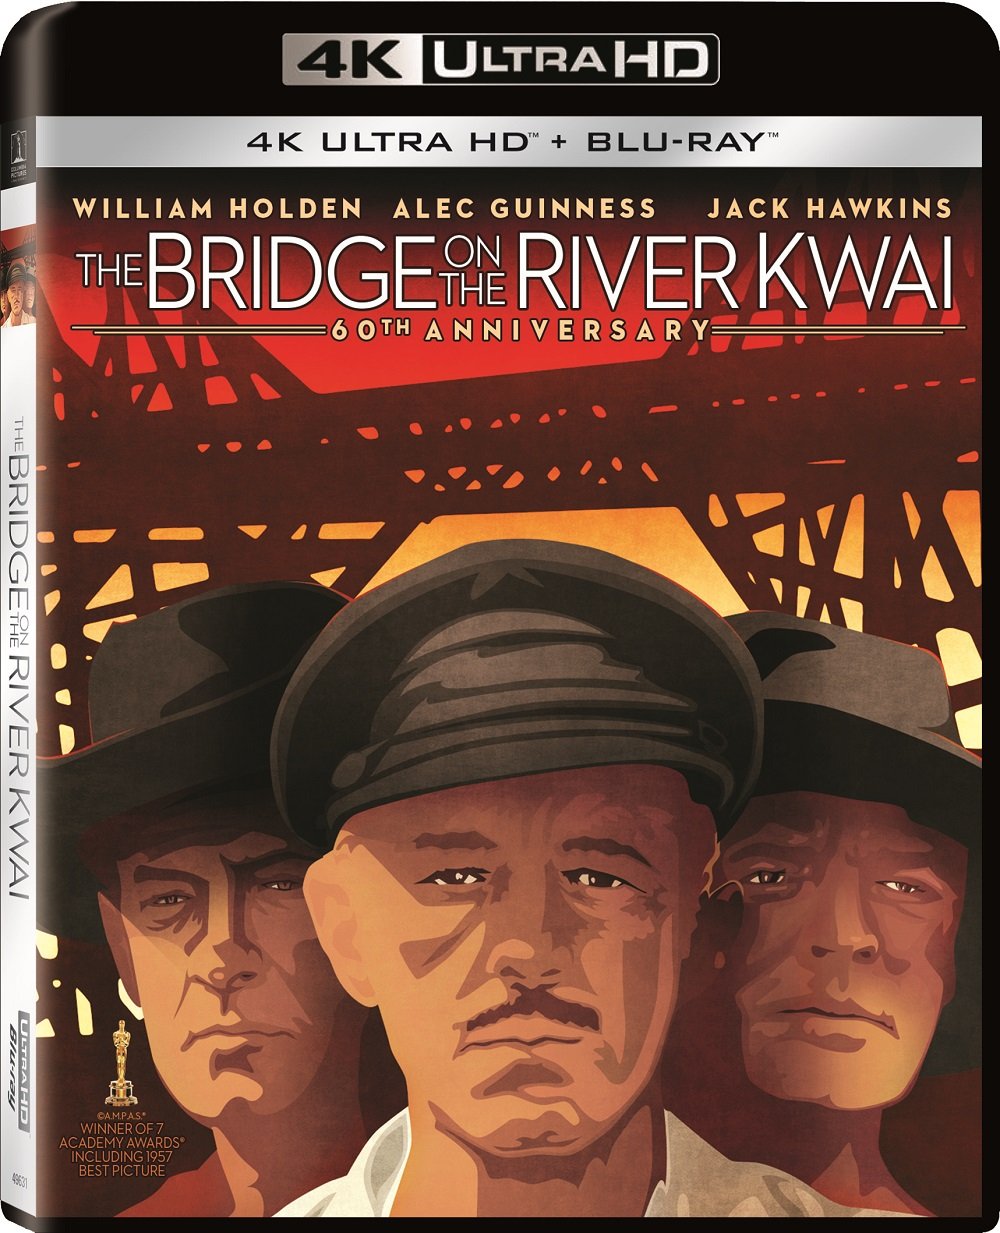  The Bridge on the River Kwai [4K Ultra HD Blu-ray] [1957]